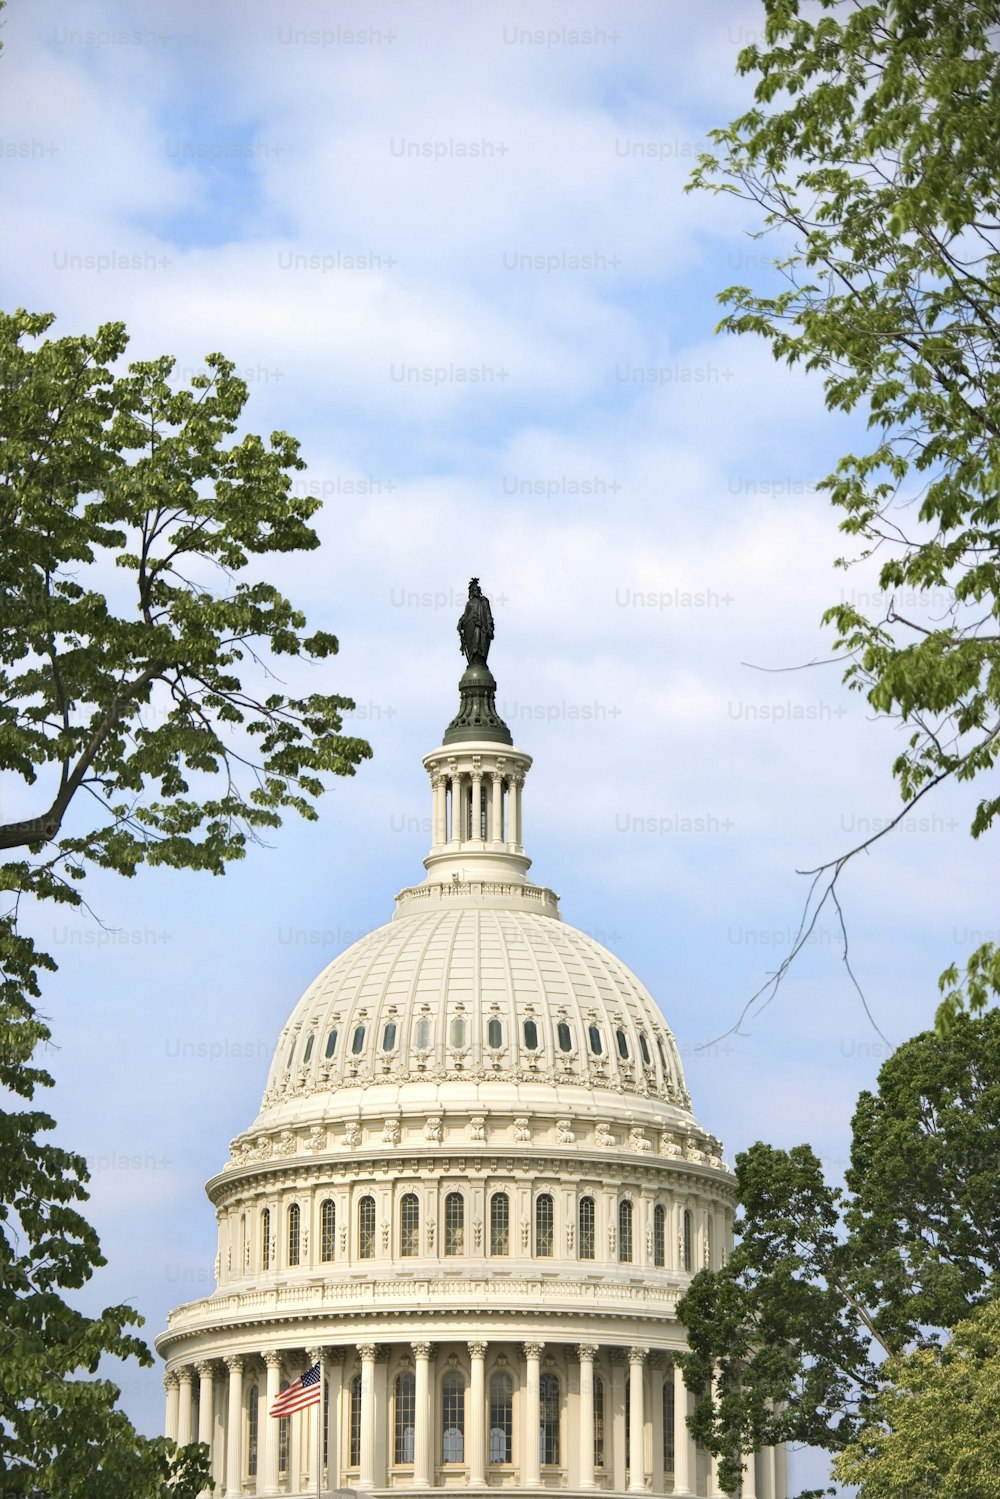 Le dôme du Capitole avec une statue au sommet